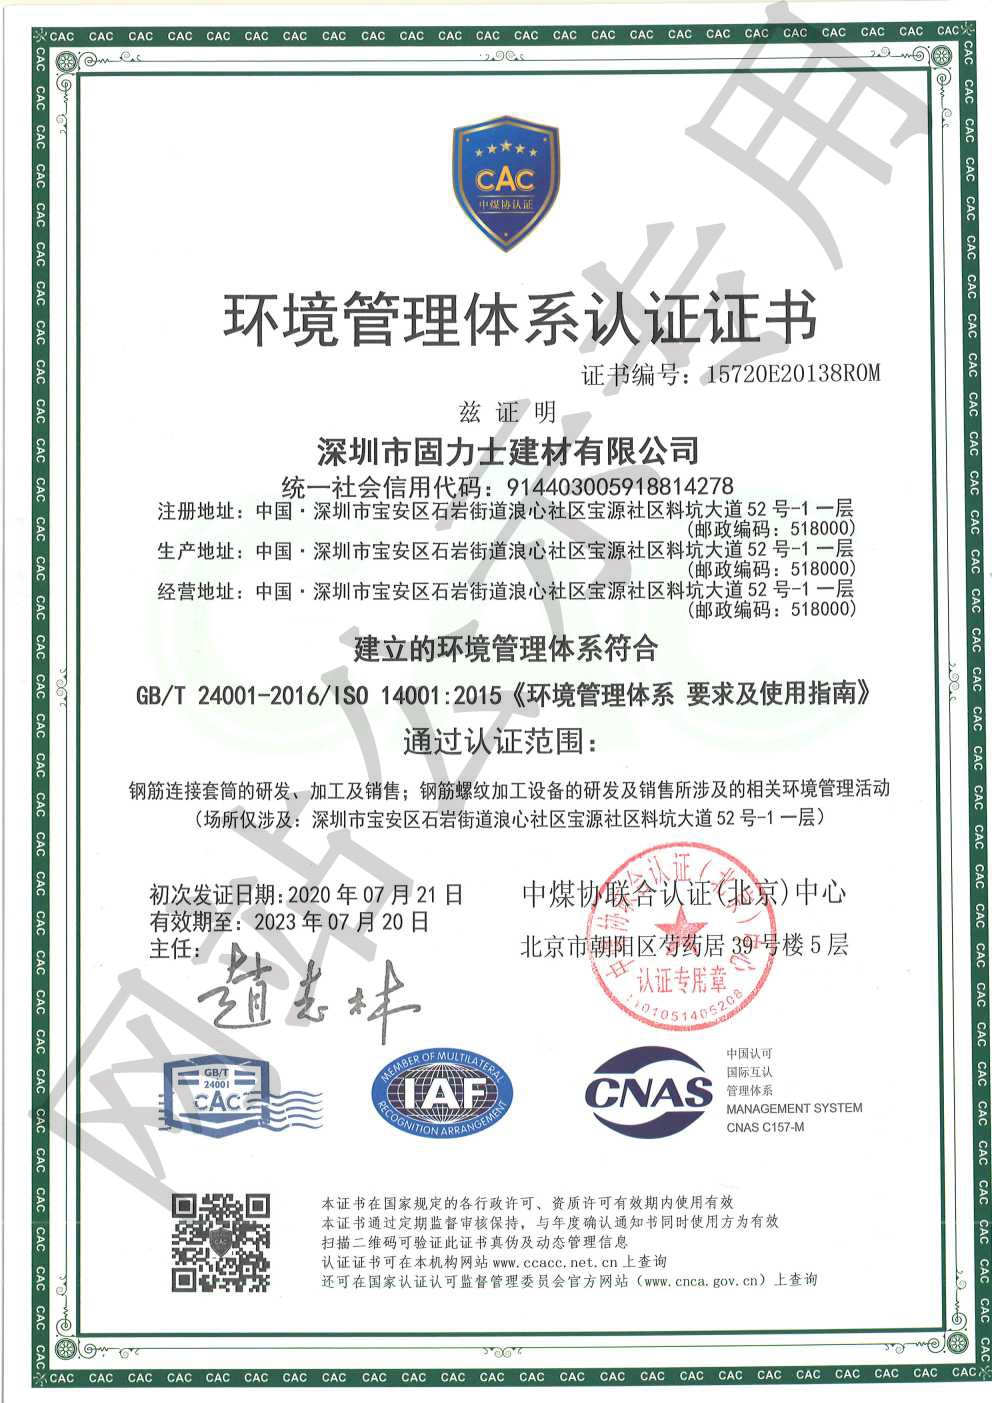 二道ISO14001证书